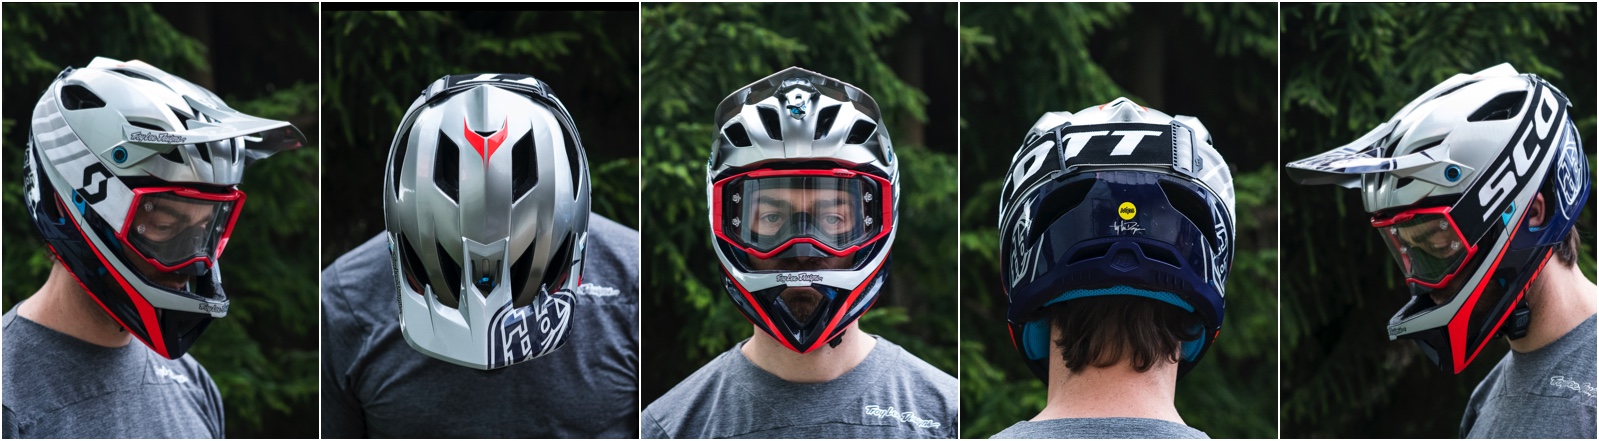 Tested] Troy Lee Designs Stage Helmet 